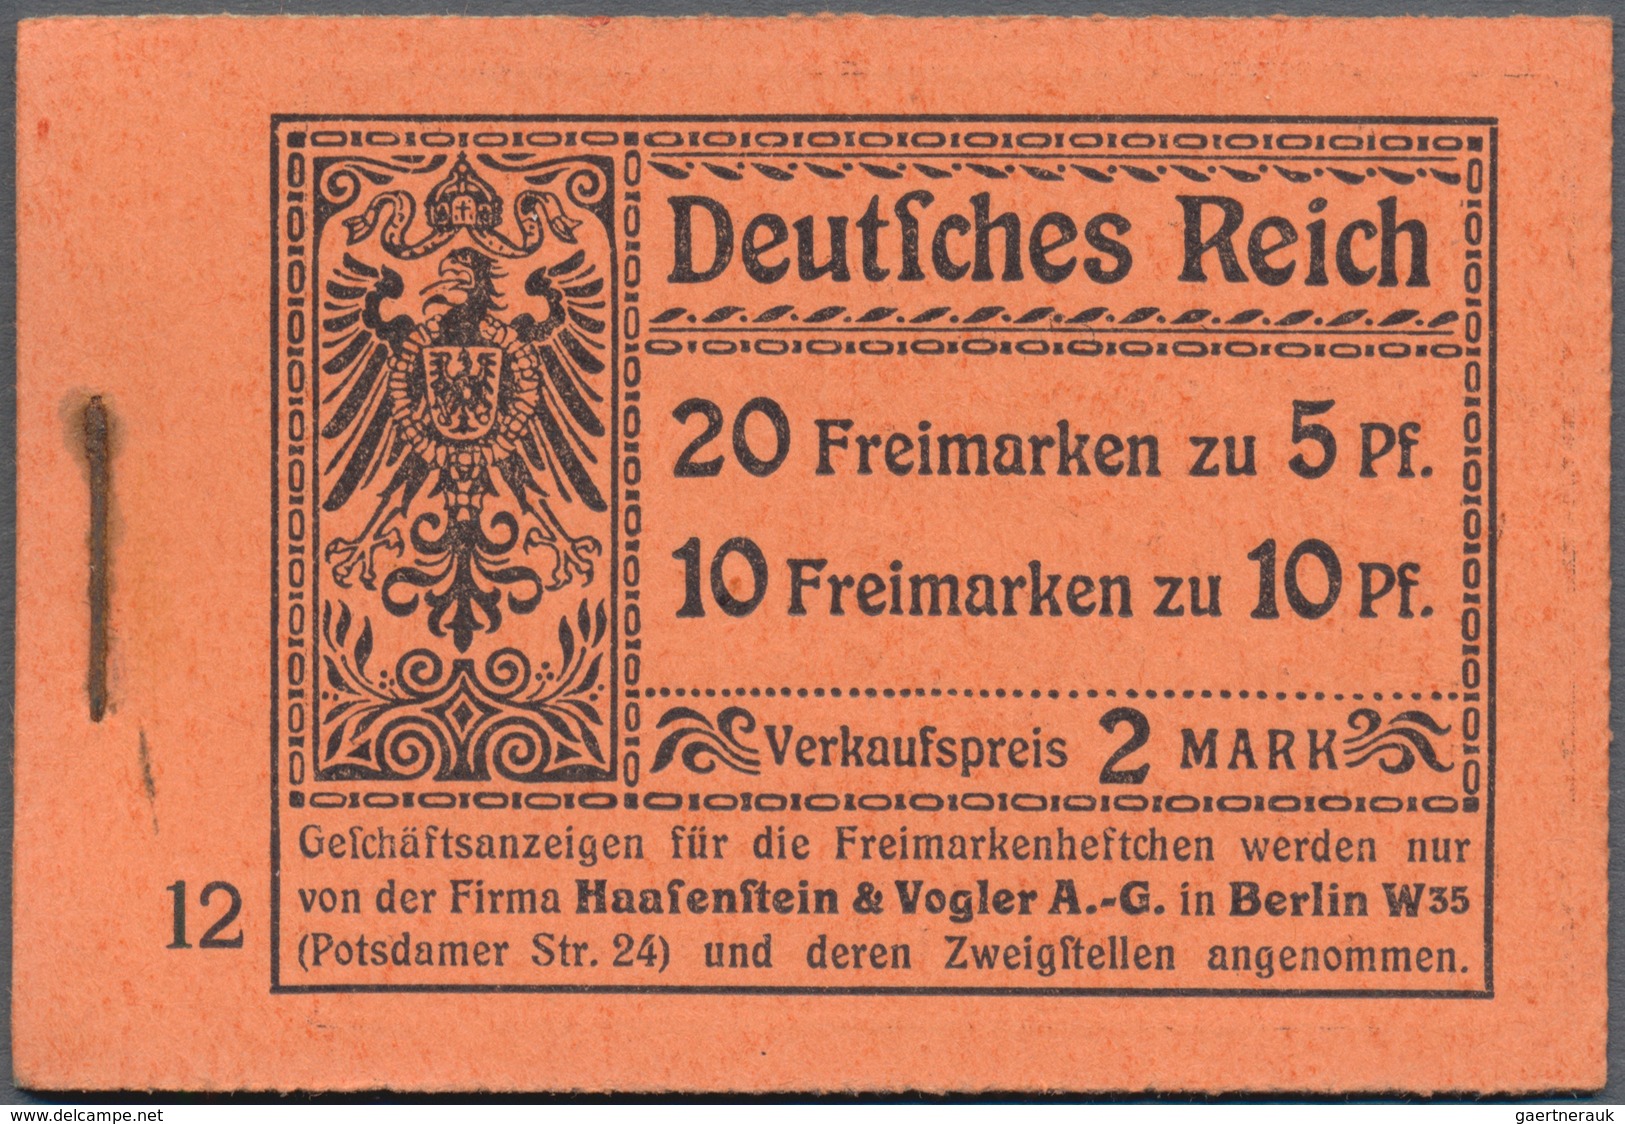 01280 Deutsches Reich - Markenheftchen: 1913, Germania-Markenheftchen Zu 2 Mark, Friedensdruck, Drei Versc - Carnets